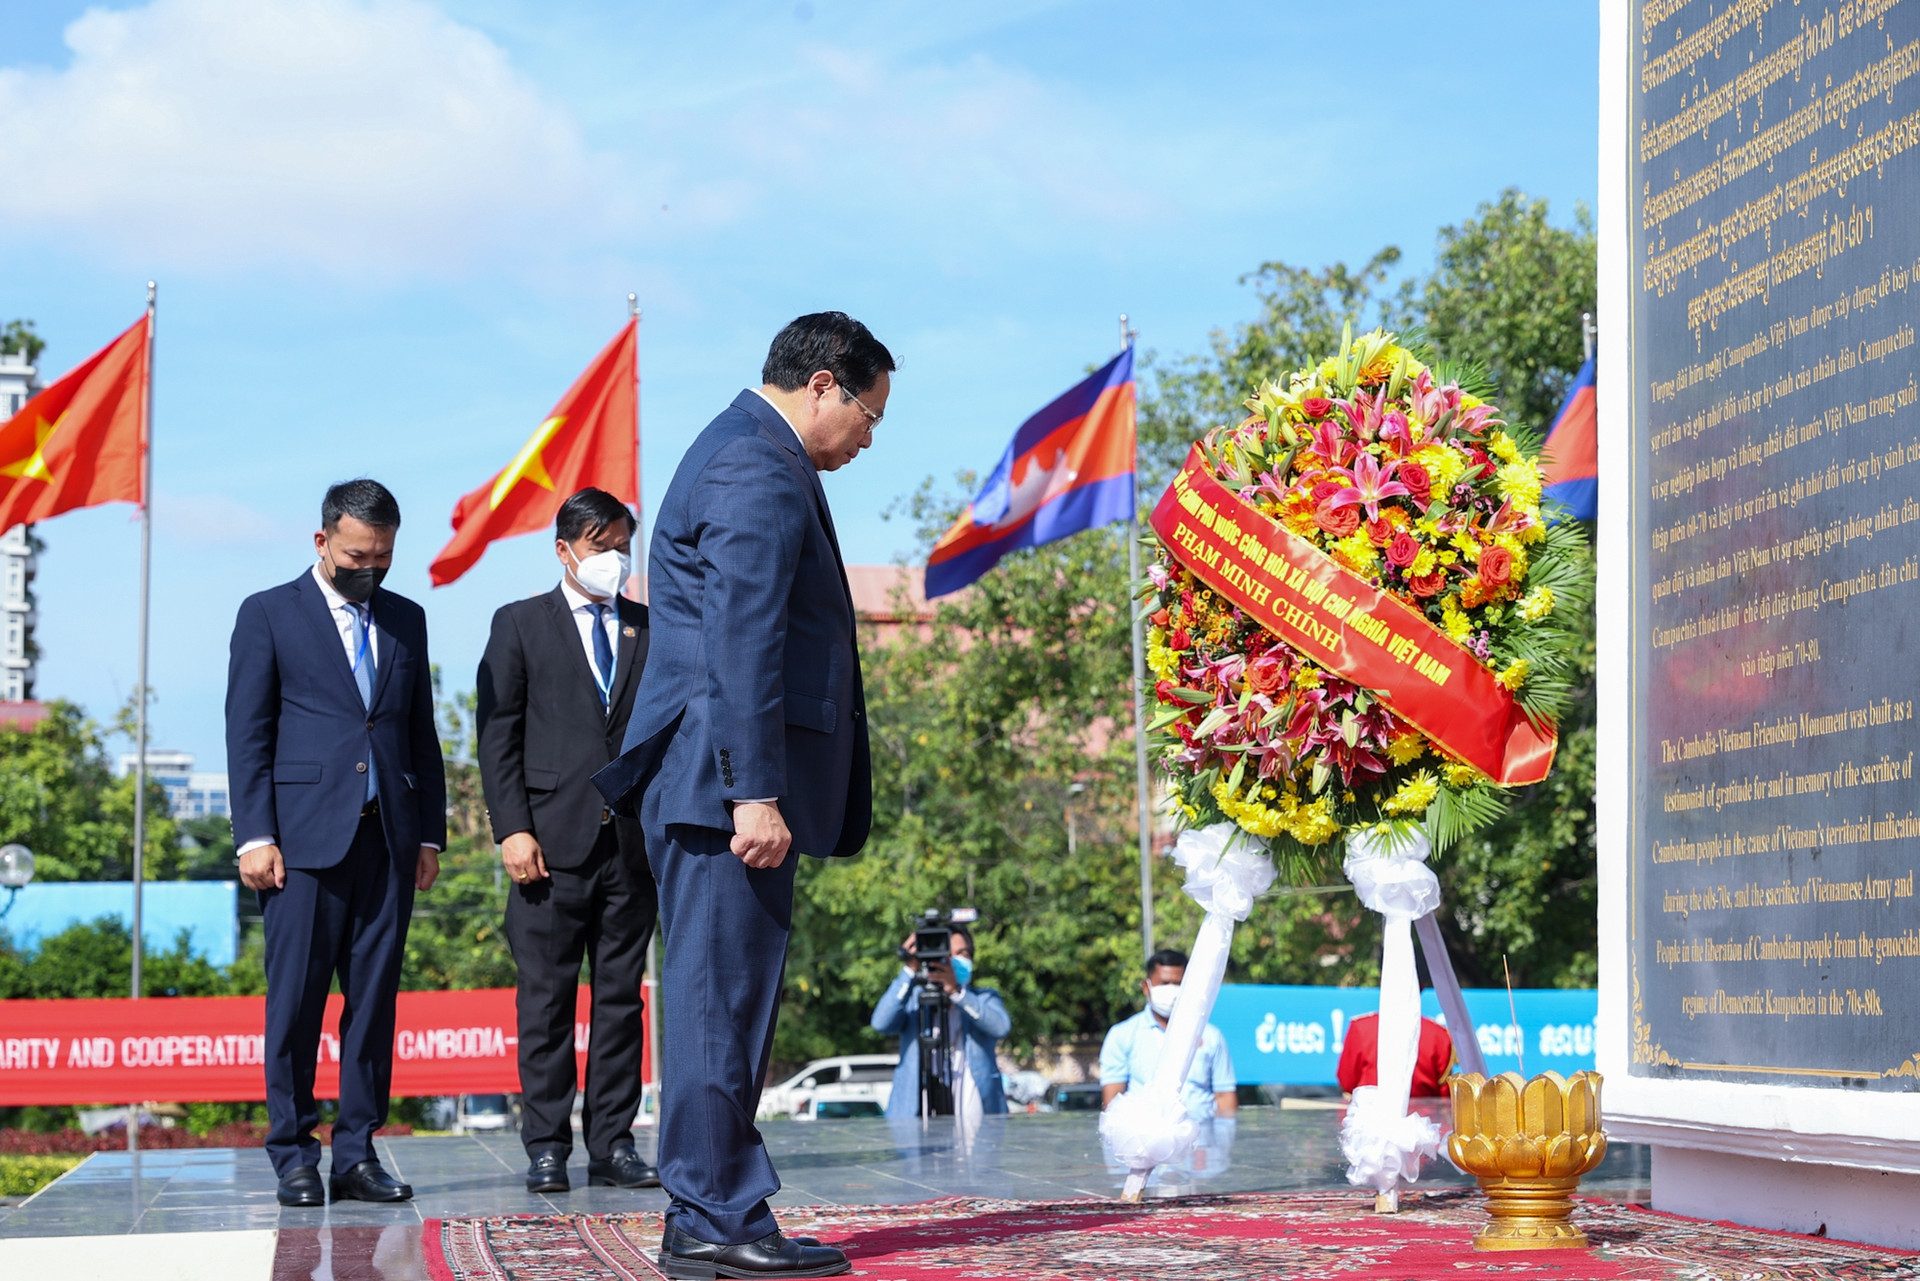 Chùm ảnh: Các hoạt động đầu tiên của Thủ tướng Phạm Minh Chính tại Campuchia - Ảnh 10.